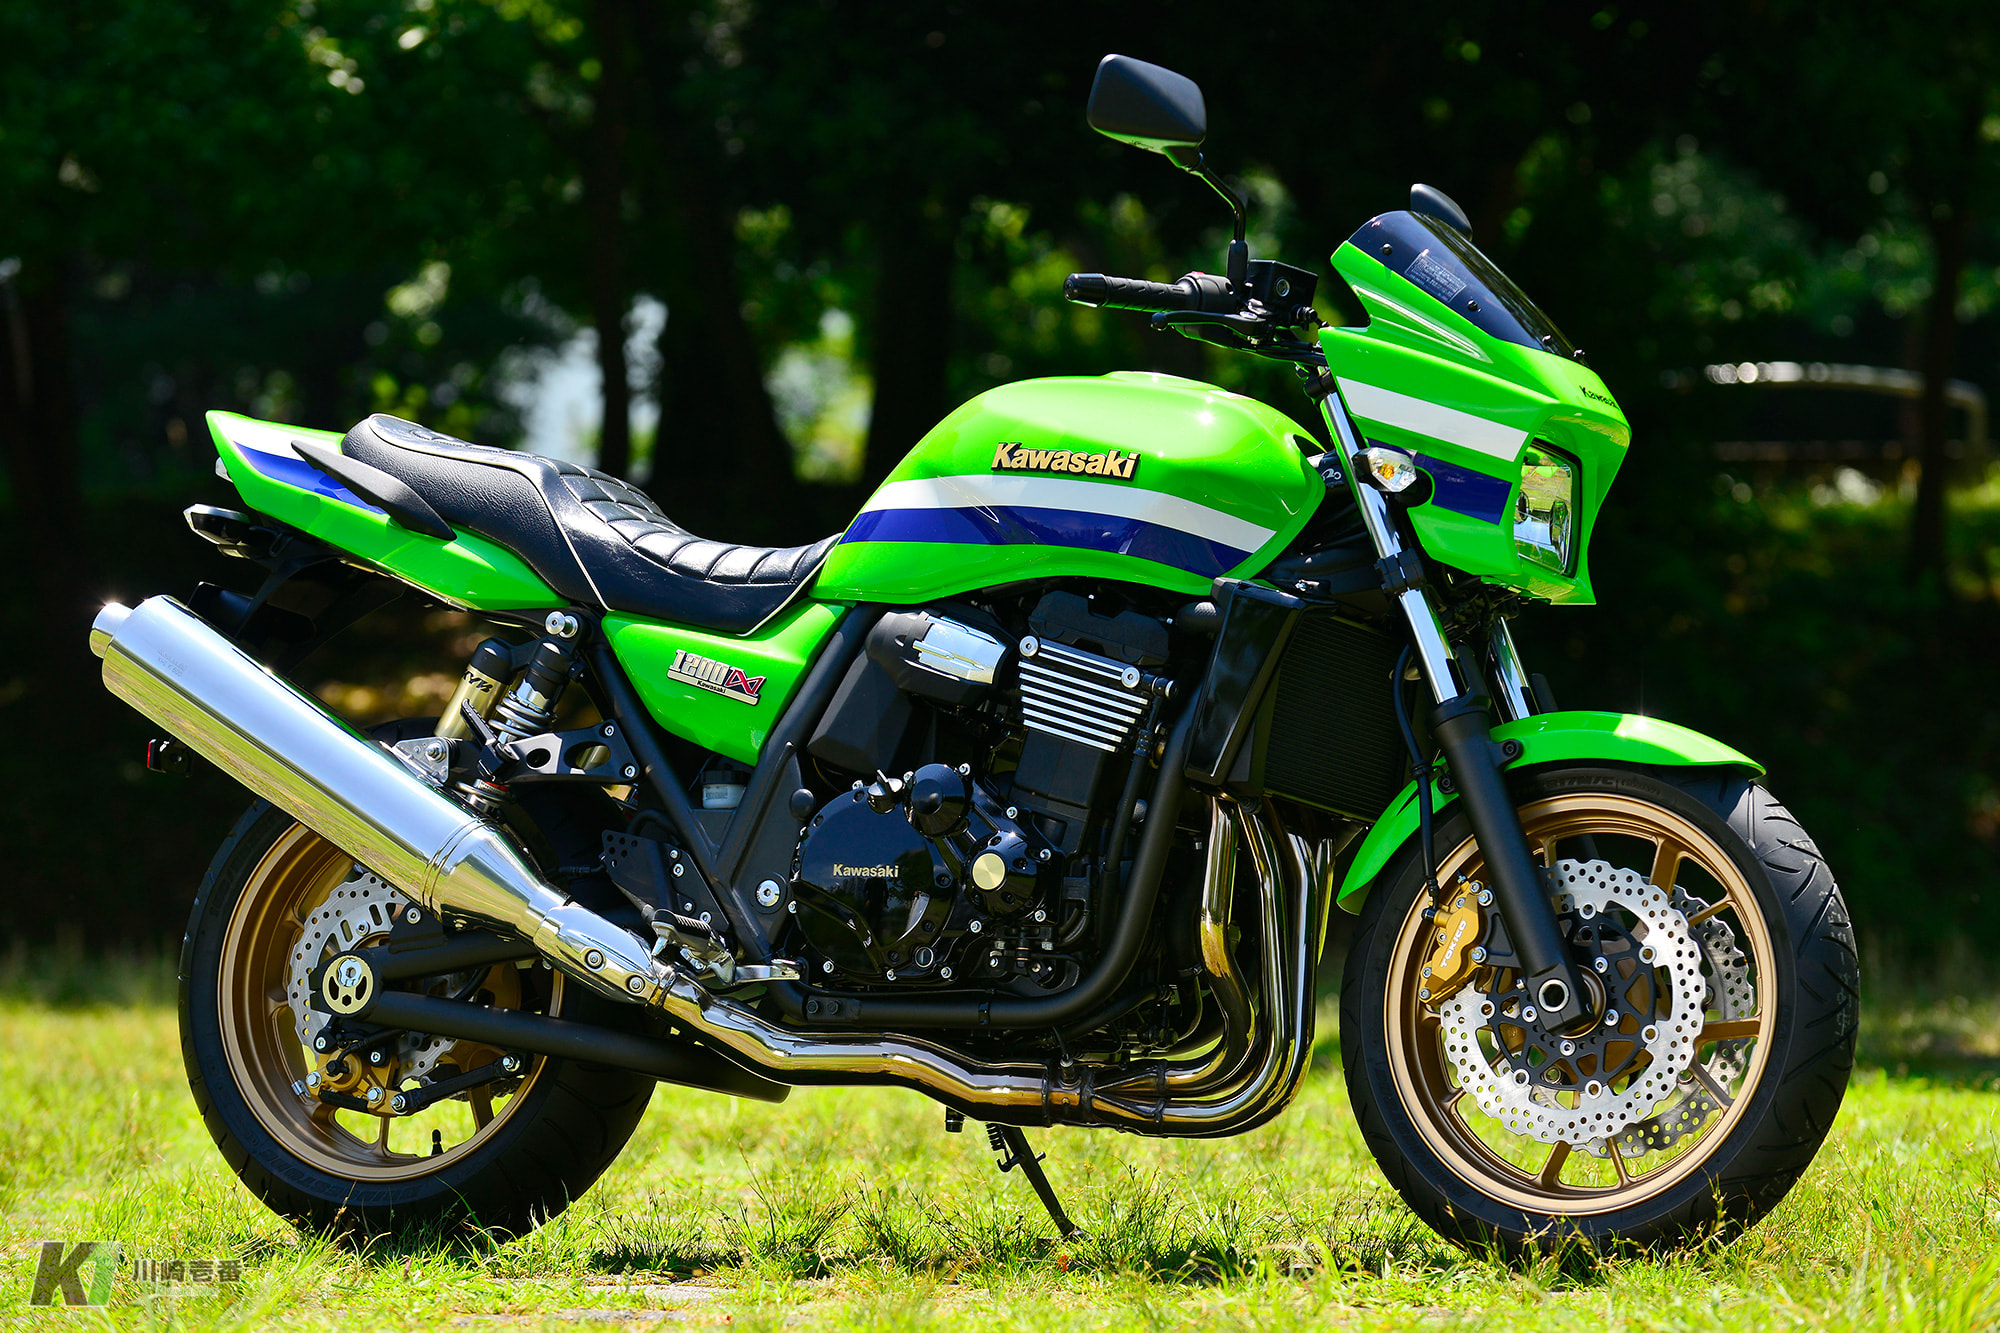 ZRX1200ダエグ シートカウル 右 濃緑M 14091-1701 カワサキ 純正  バイク 部品 ZR1200D ZRT20D タイガーカラー 修復素材に ペイント素材に 車検 Genuine:22316777